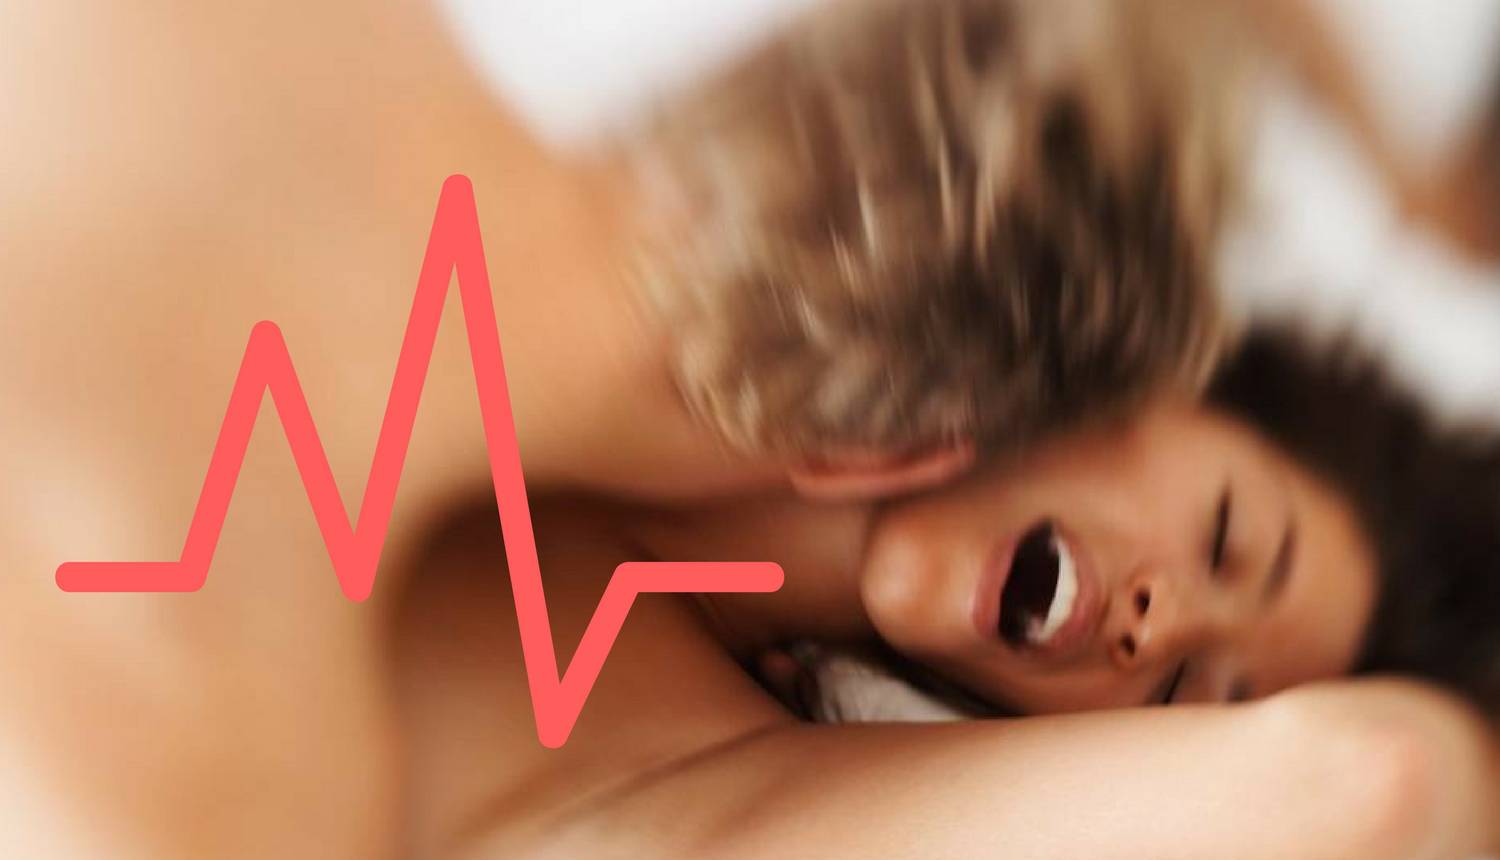 Može li srce zaista iznenada prestati raditi tijekom seksa?